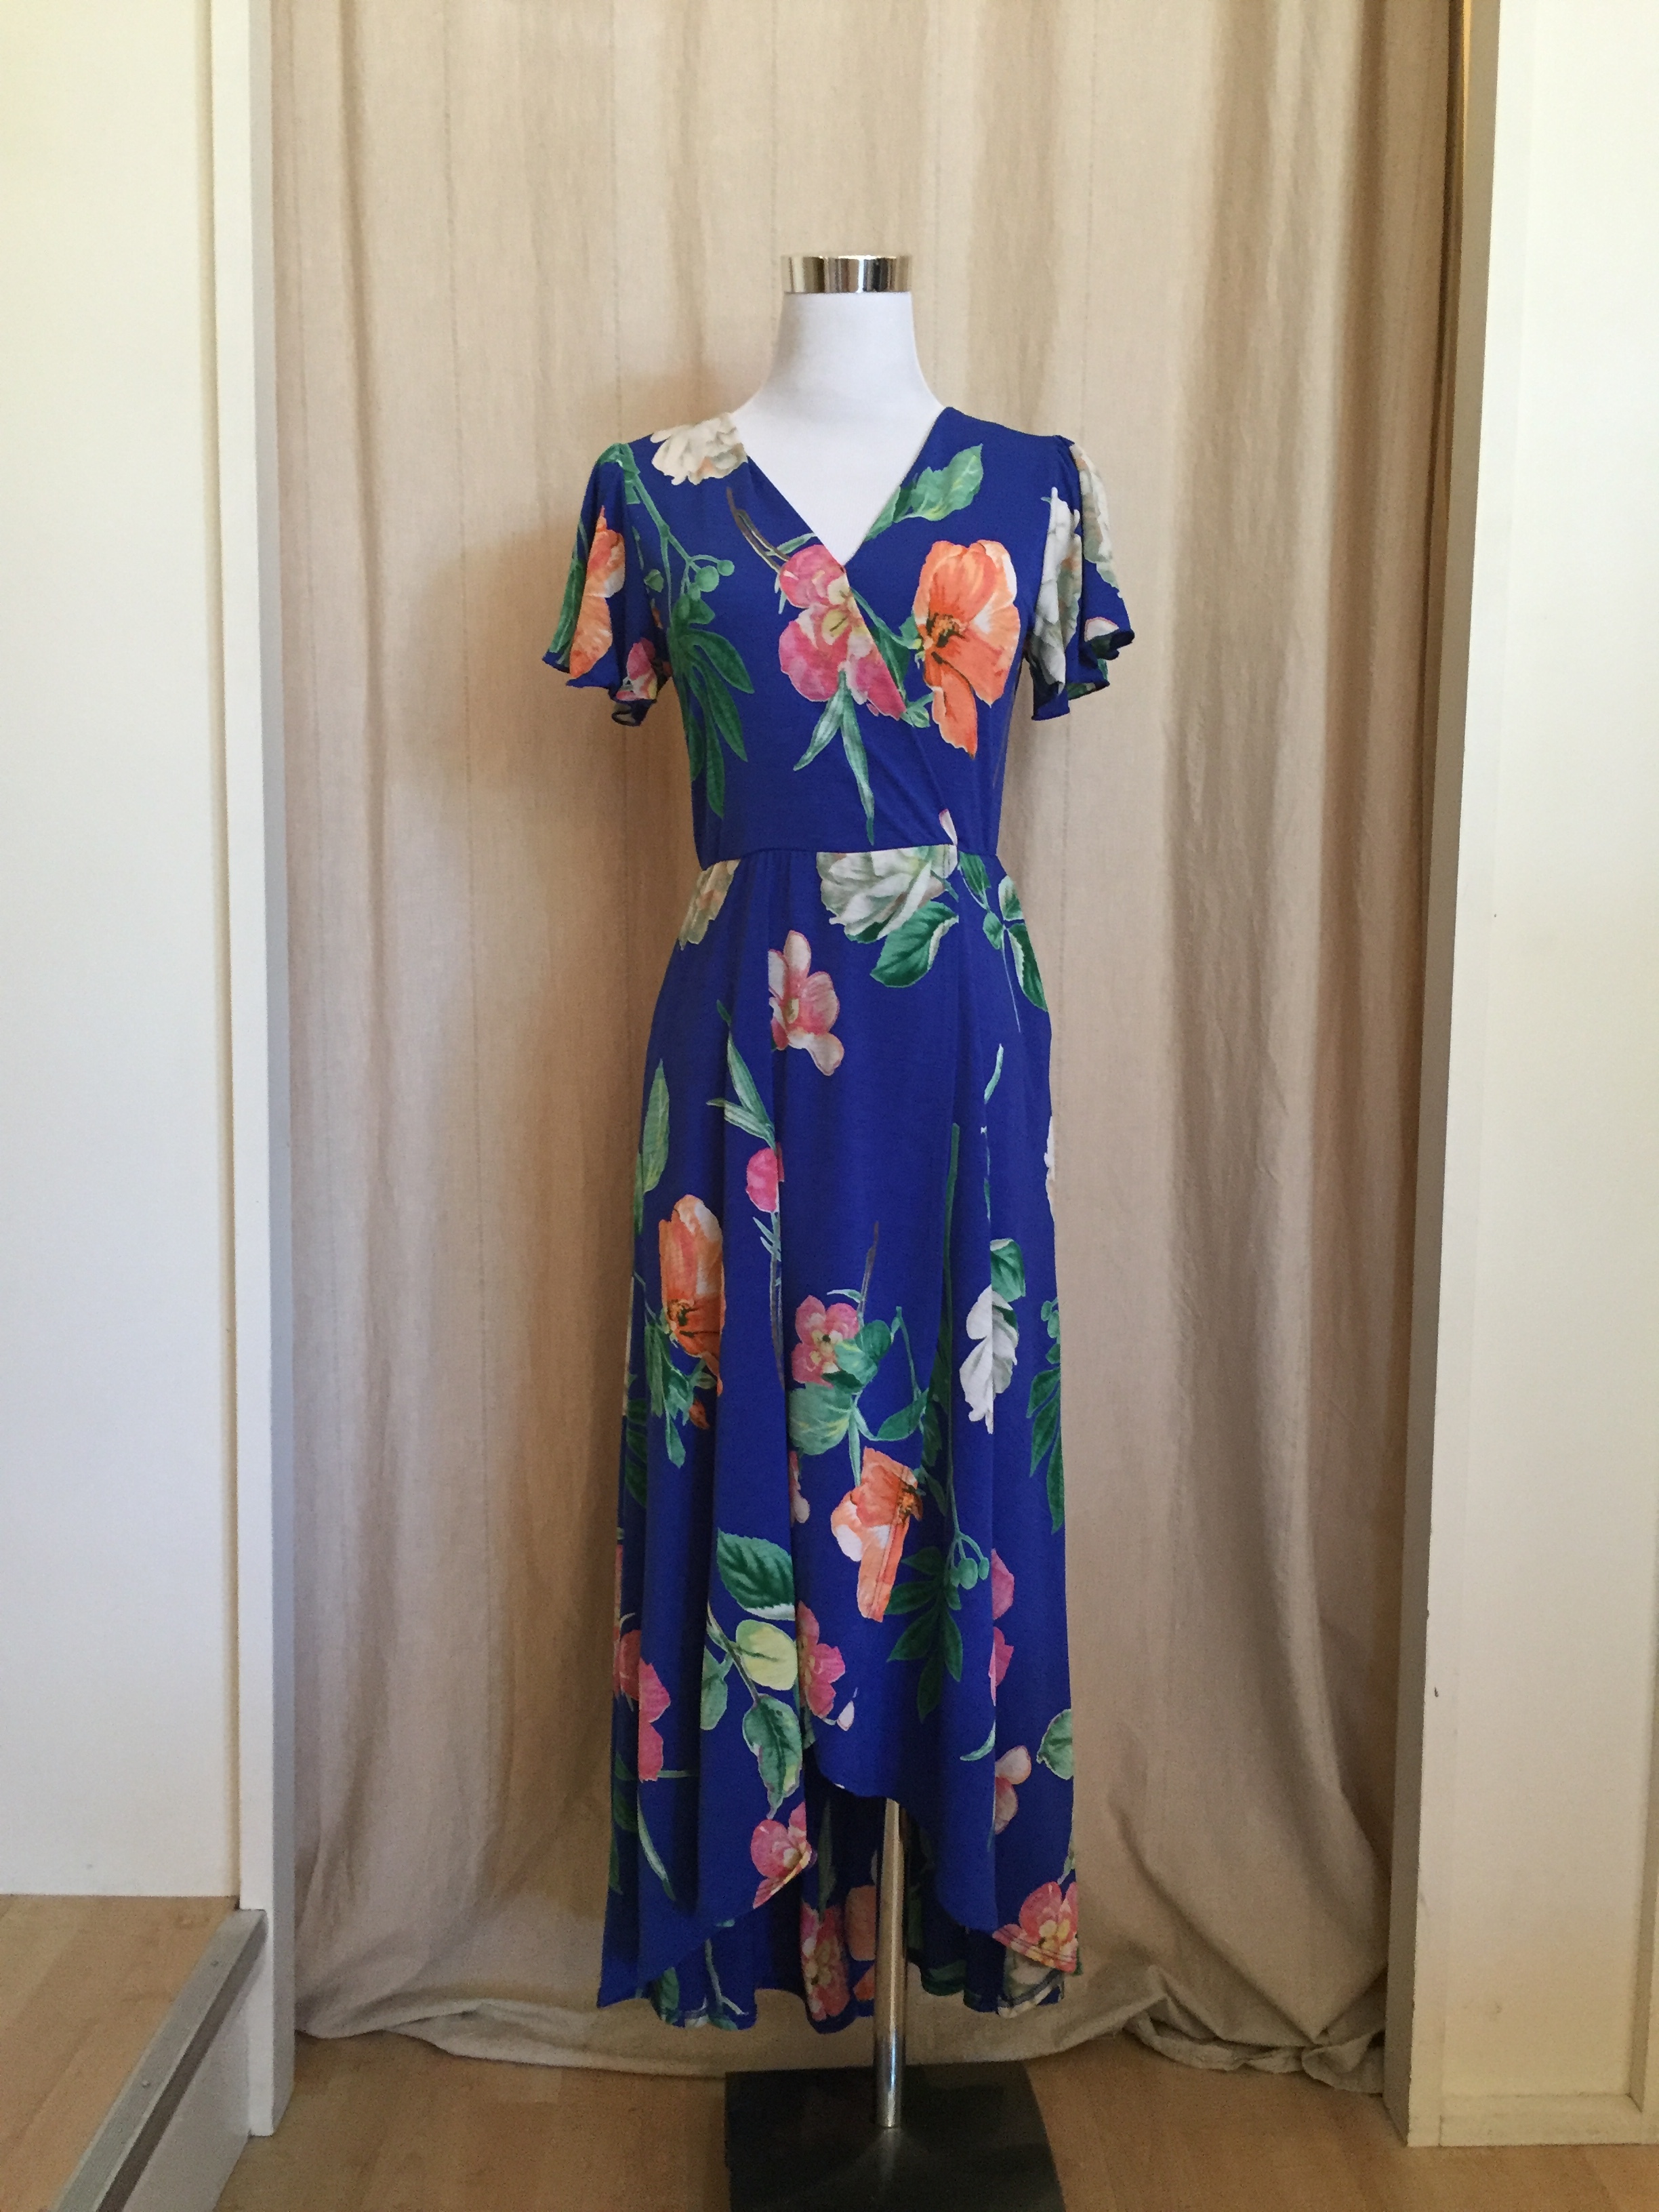  Royal Blue Wrap Dress, $54 